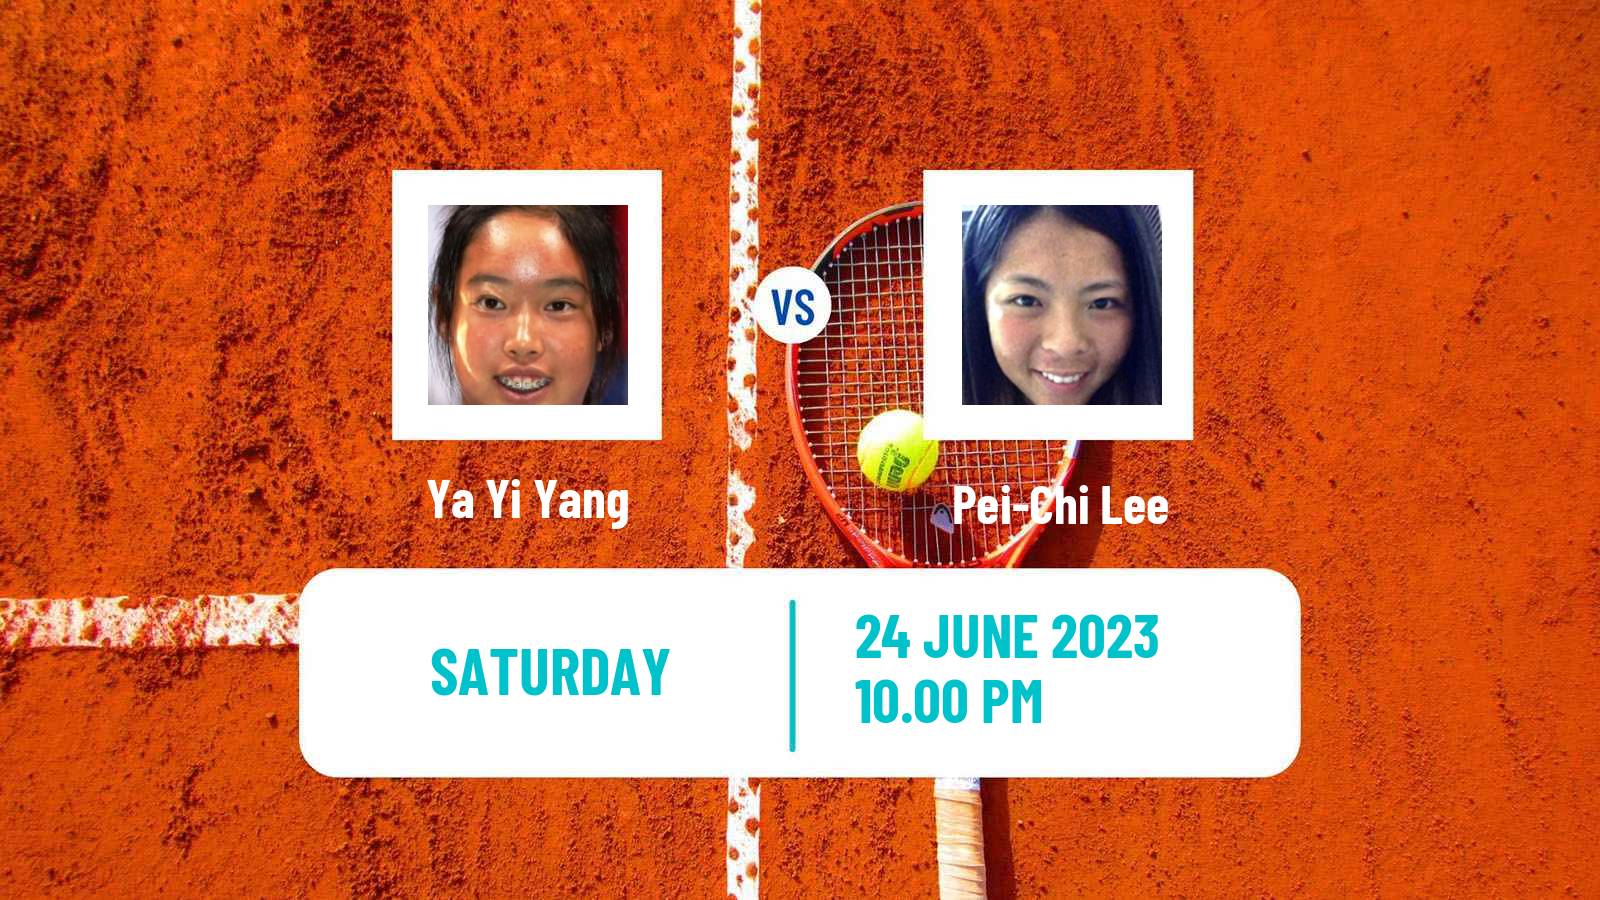 Tennis ITF W25 Tainan 2 Women Ya Yi Yang - Pei-Chi Lee